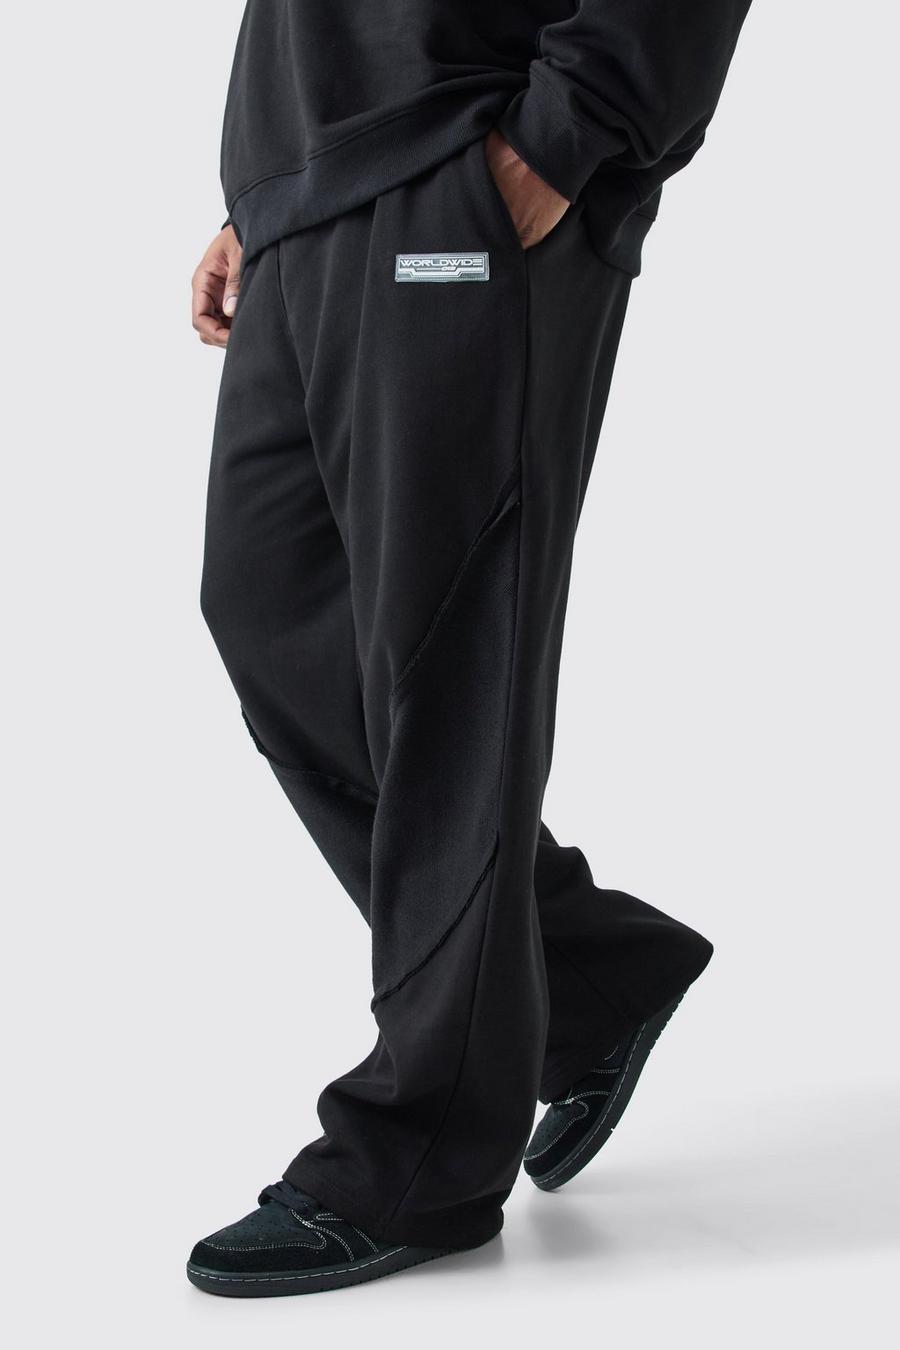 Pantalón deportivo Plus holgado con panel y bajo sin acabar, Black image number 1